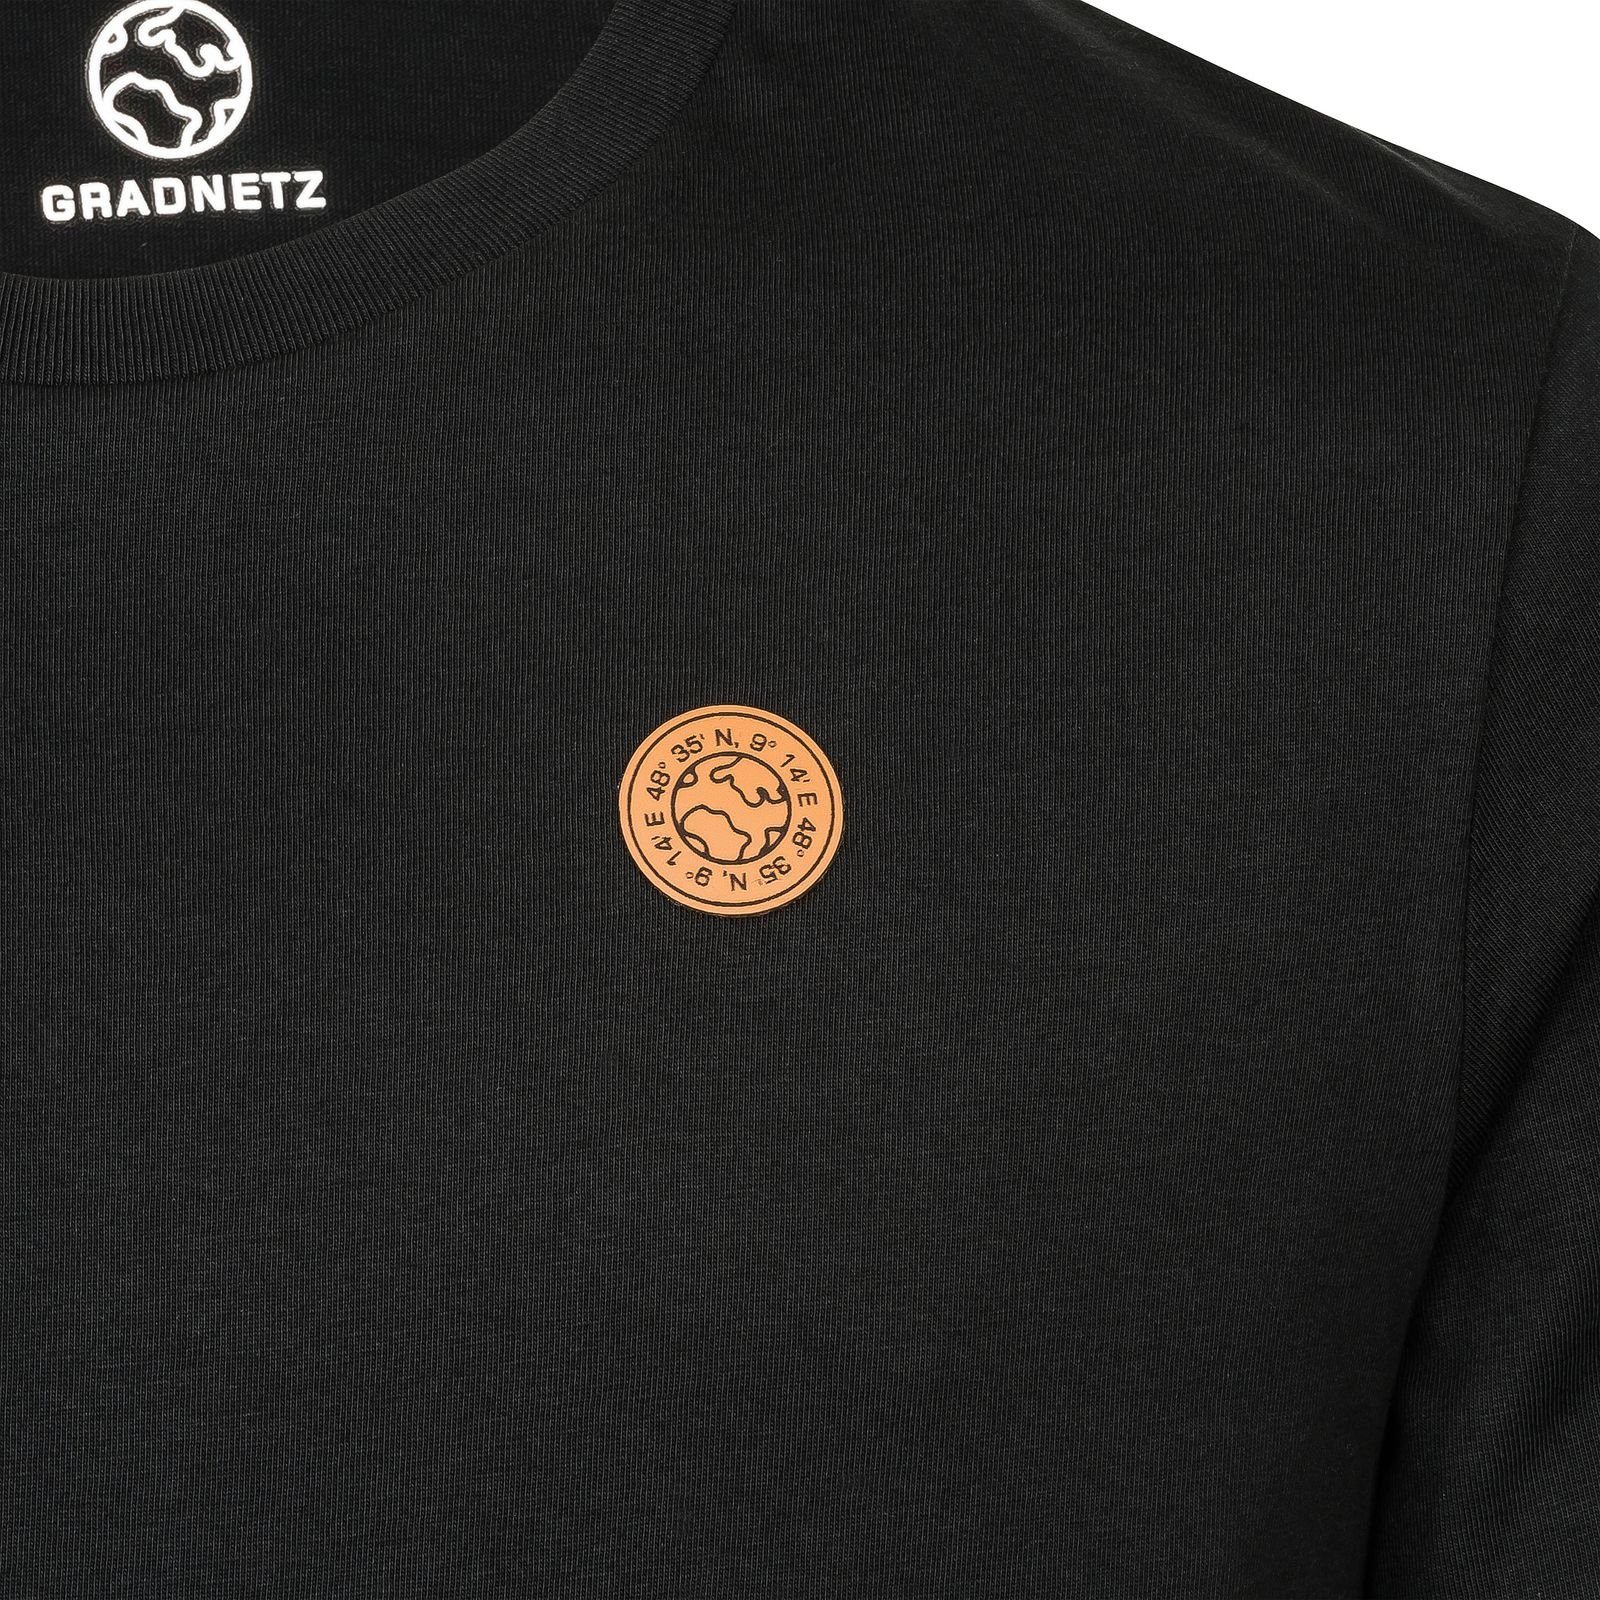 Gradnetz T-Shirt nachhaltig basic & schwarz fair 100% unisex leather Biobaumwolle